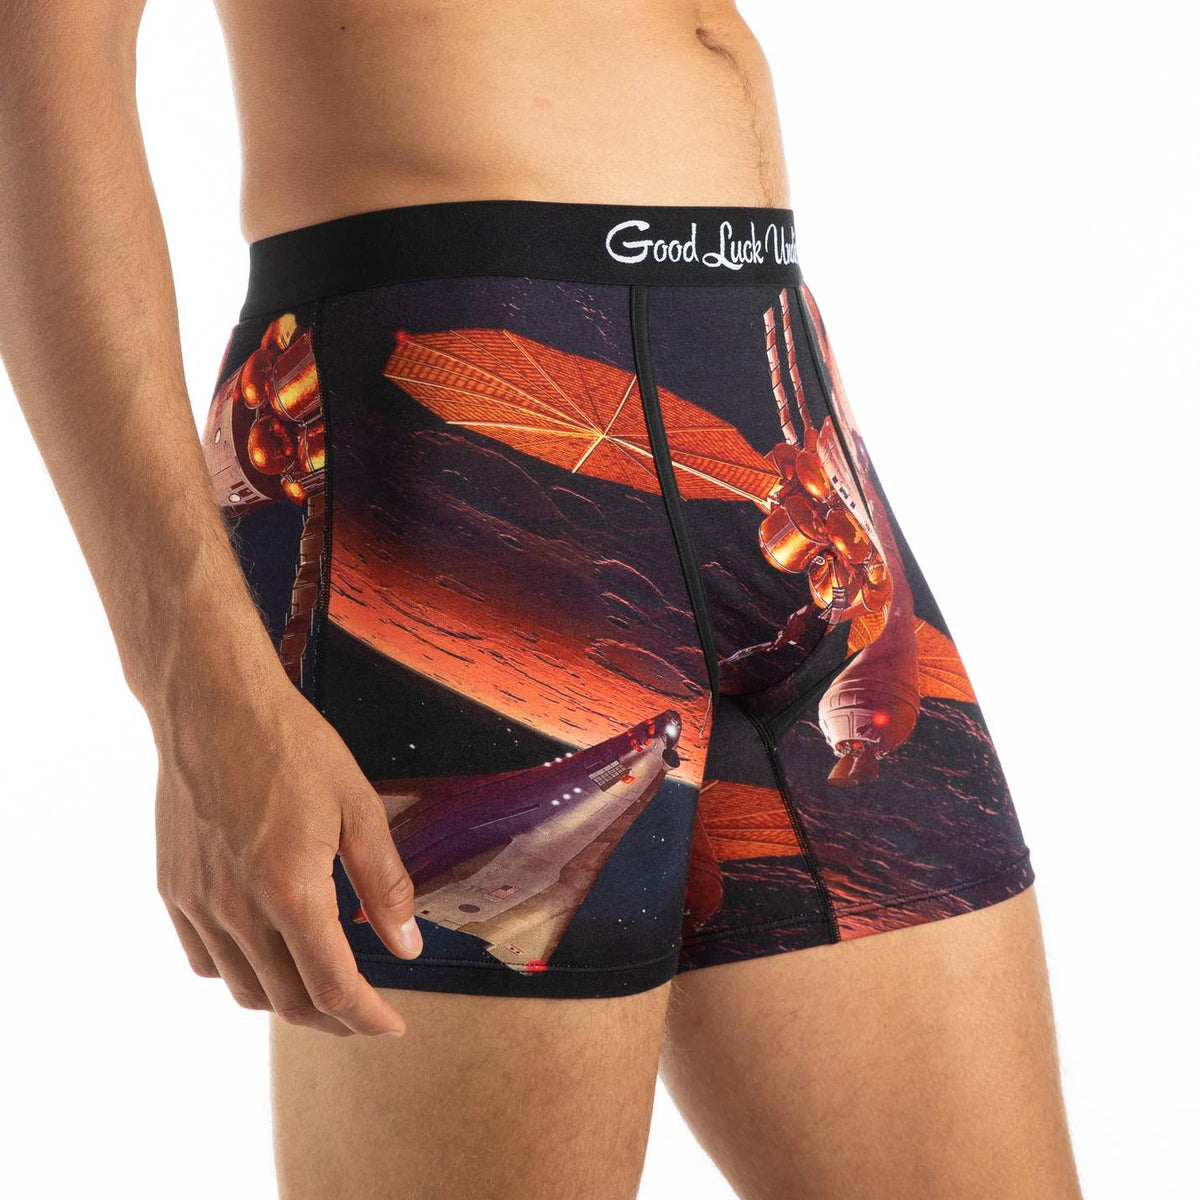 Men's Mars Space Station Underwear